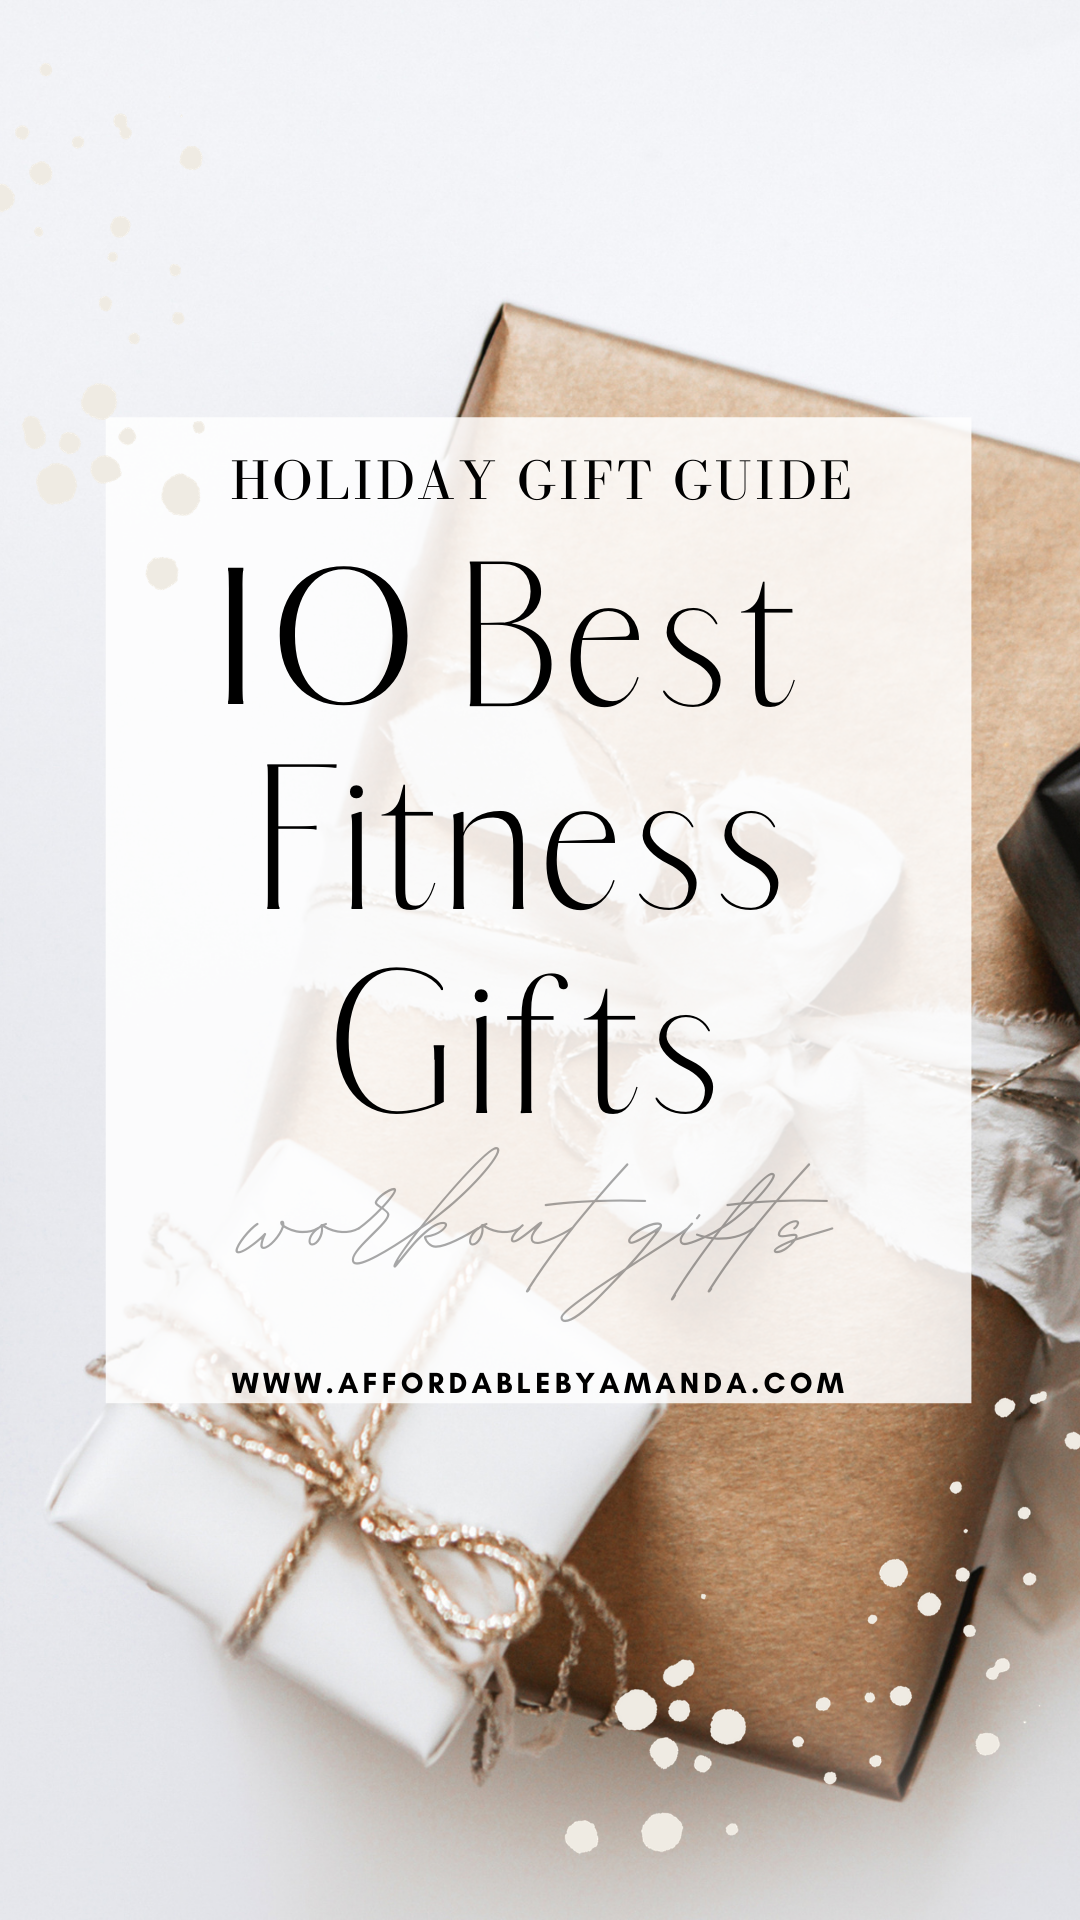 https://affordablebyamanda.com/wp-content/uploads/2020/11/10-best-fitness-gifts-2020.png